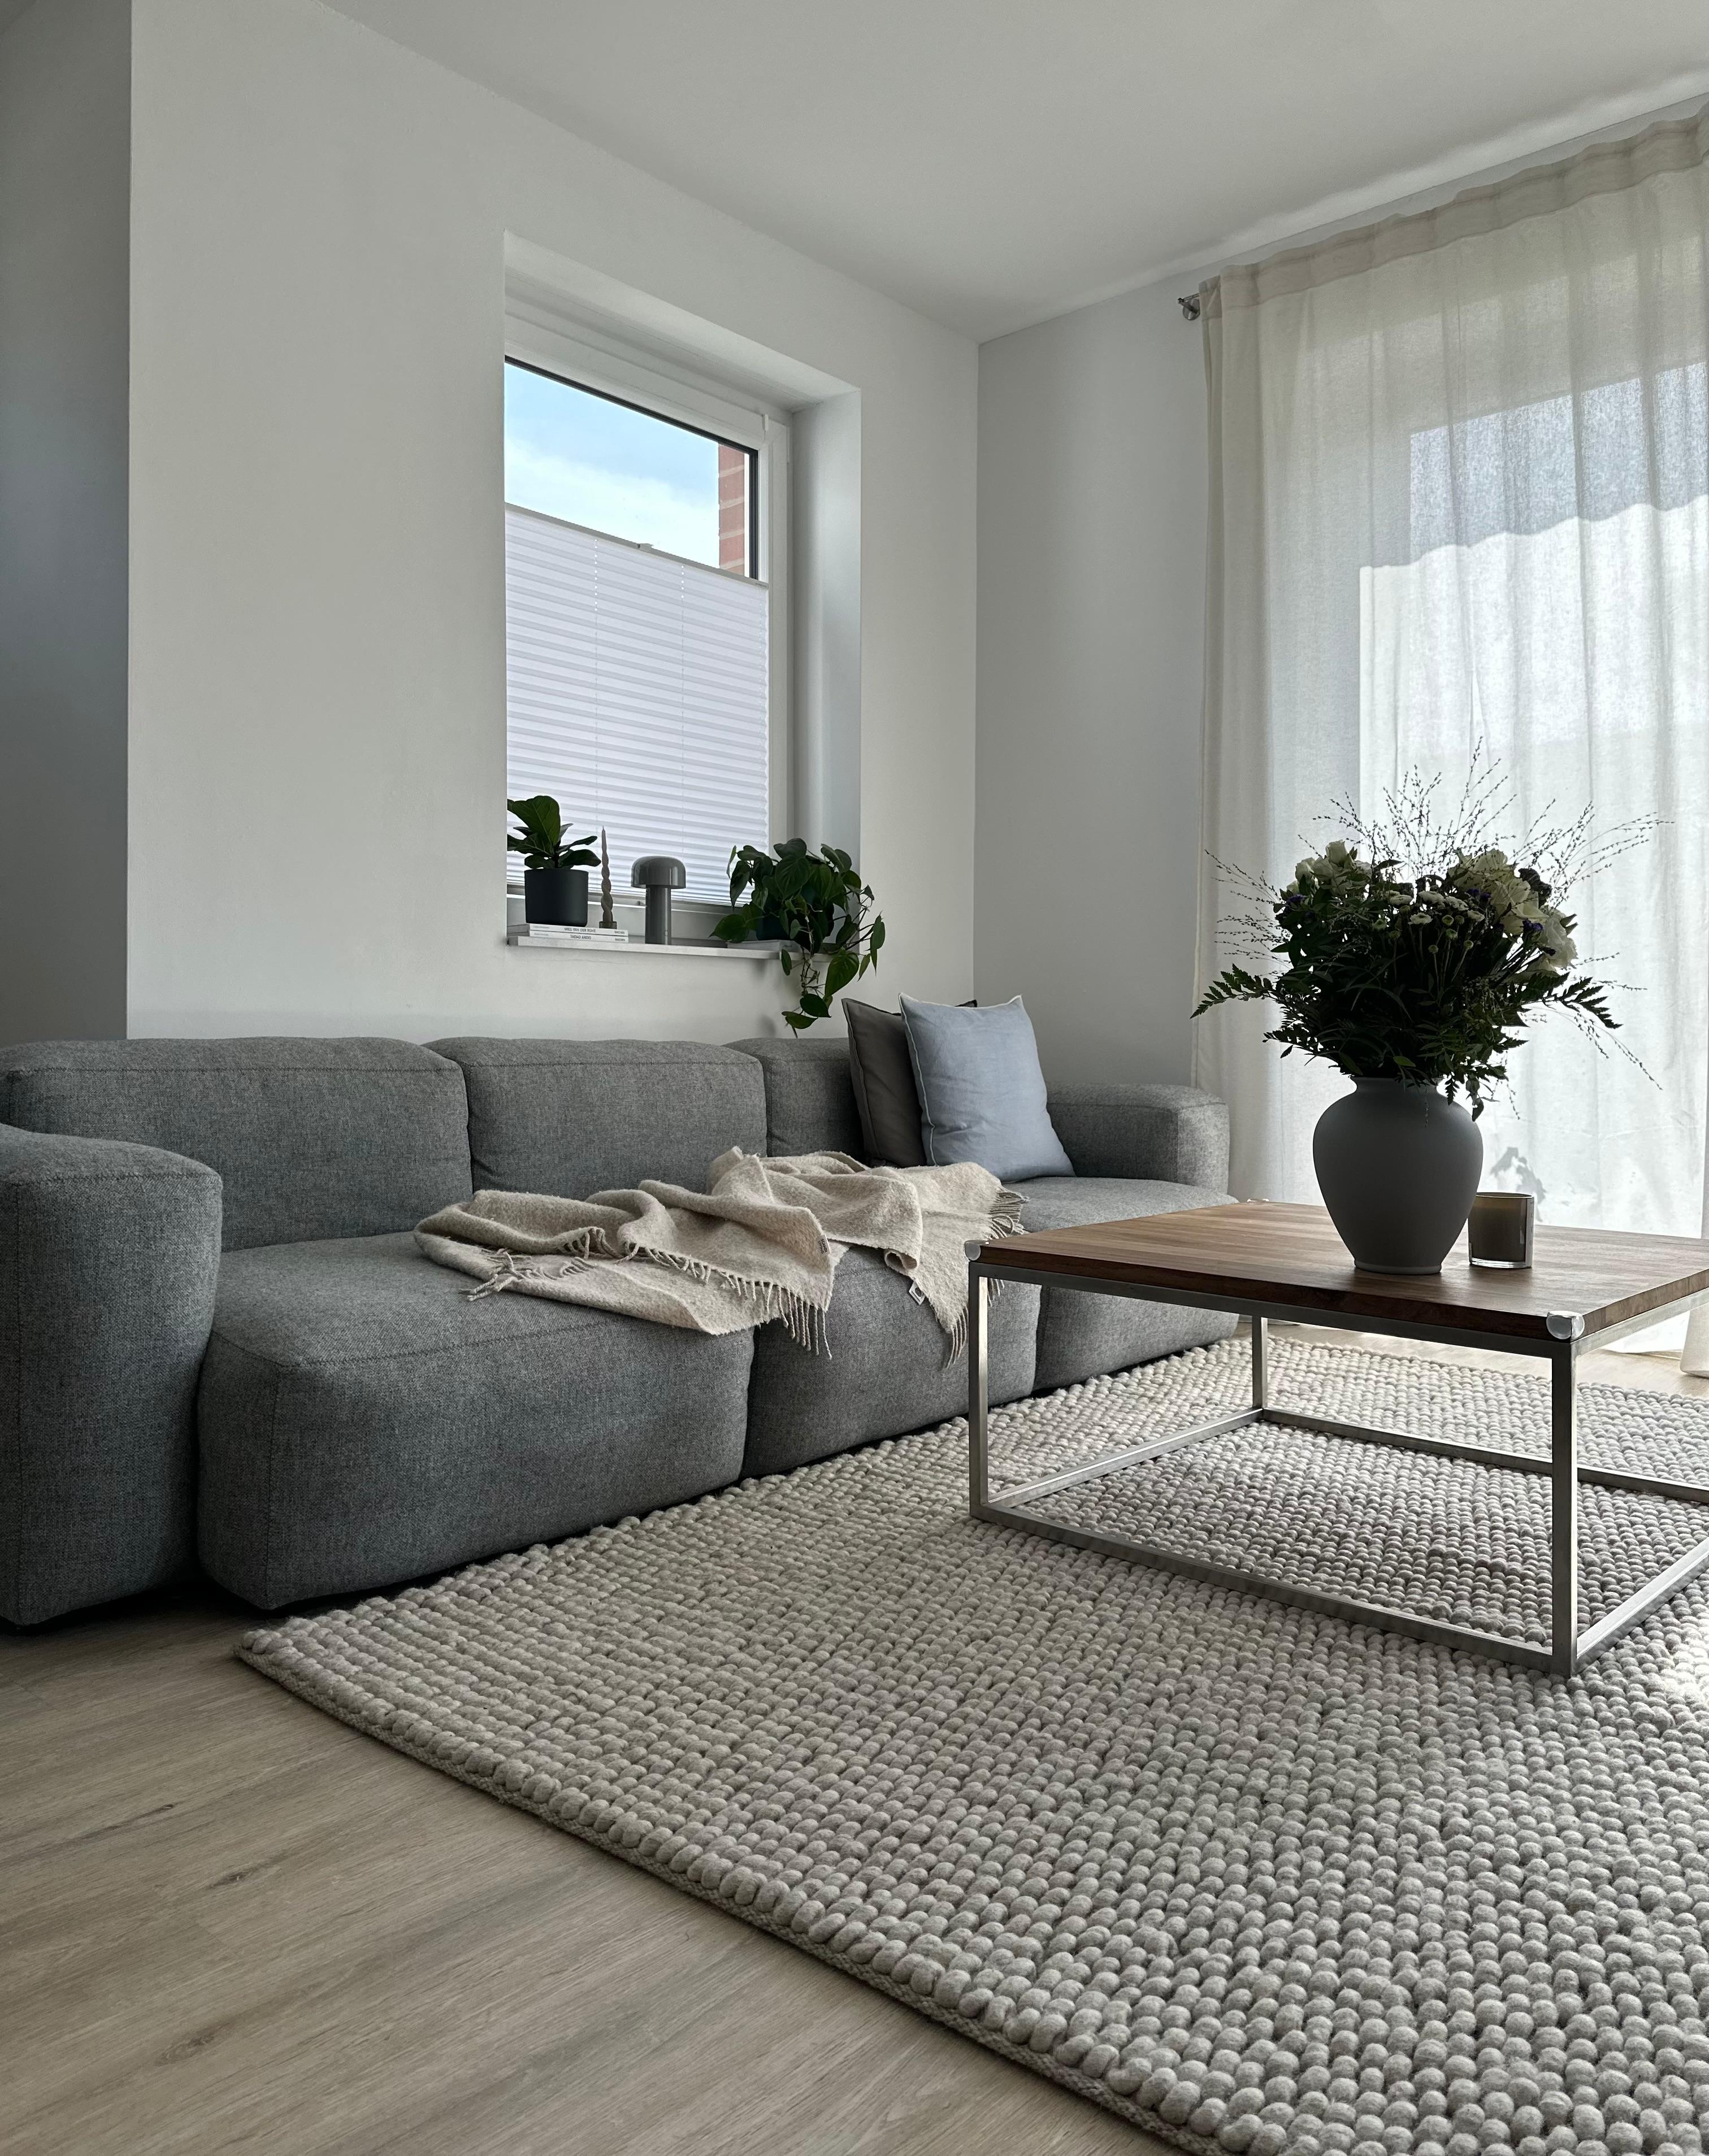 #wohnzimmer #grauessofa #haydesign #couchliebt #couchtisch #frischeblumen #blumenvase #grauvase #beigerteppich